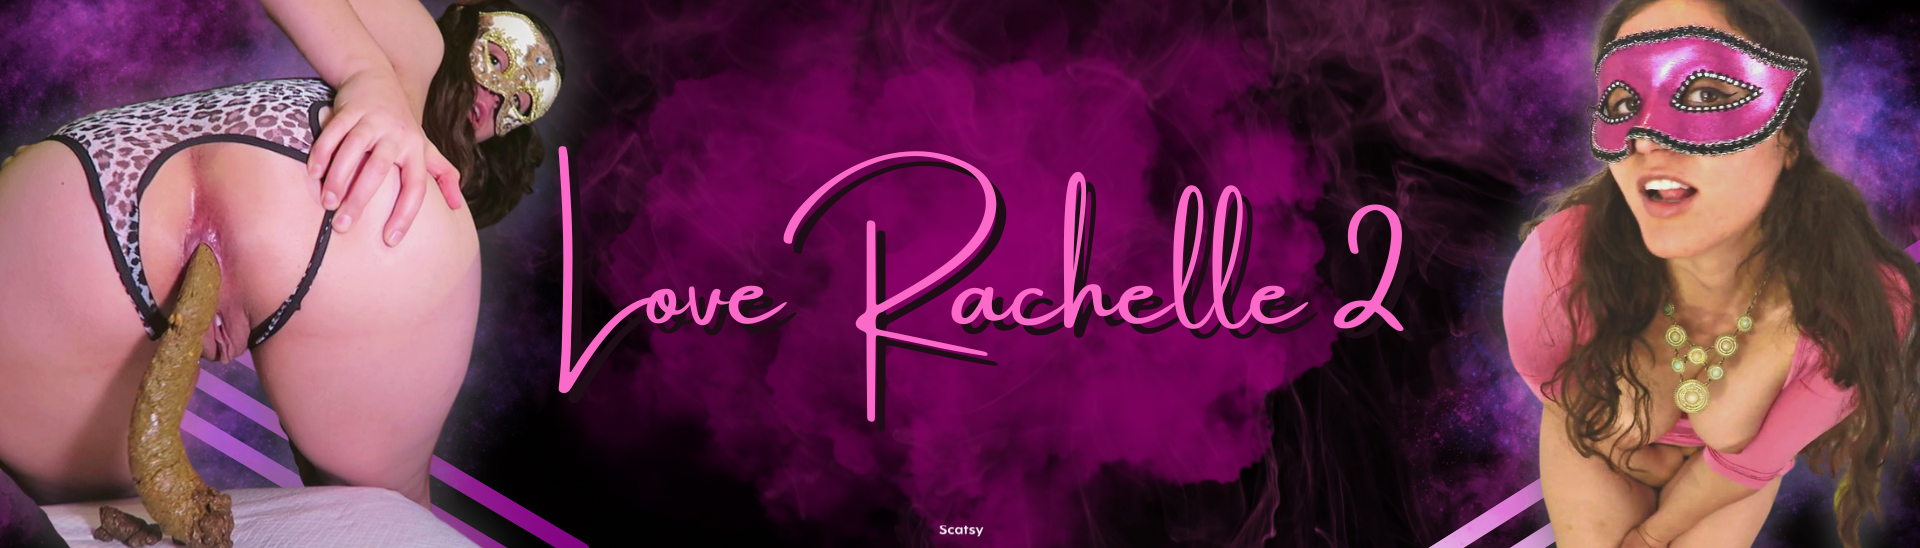 Banner for LoveRachelle2